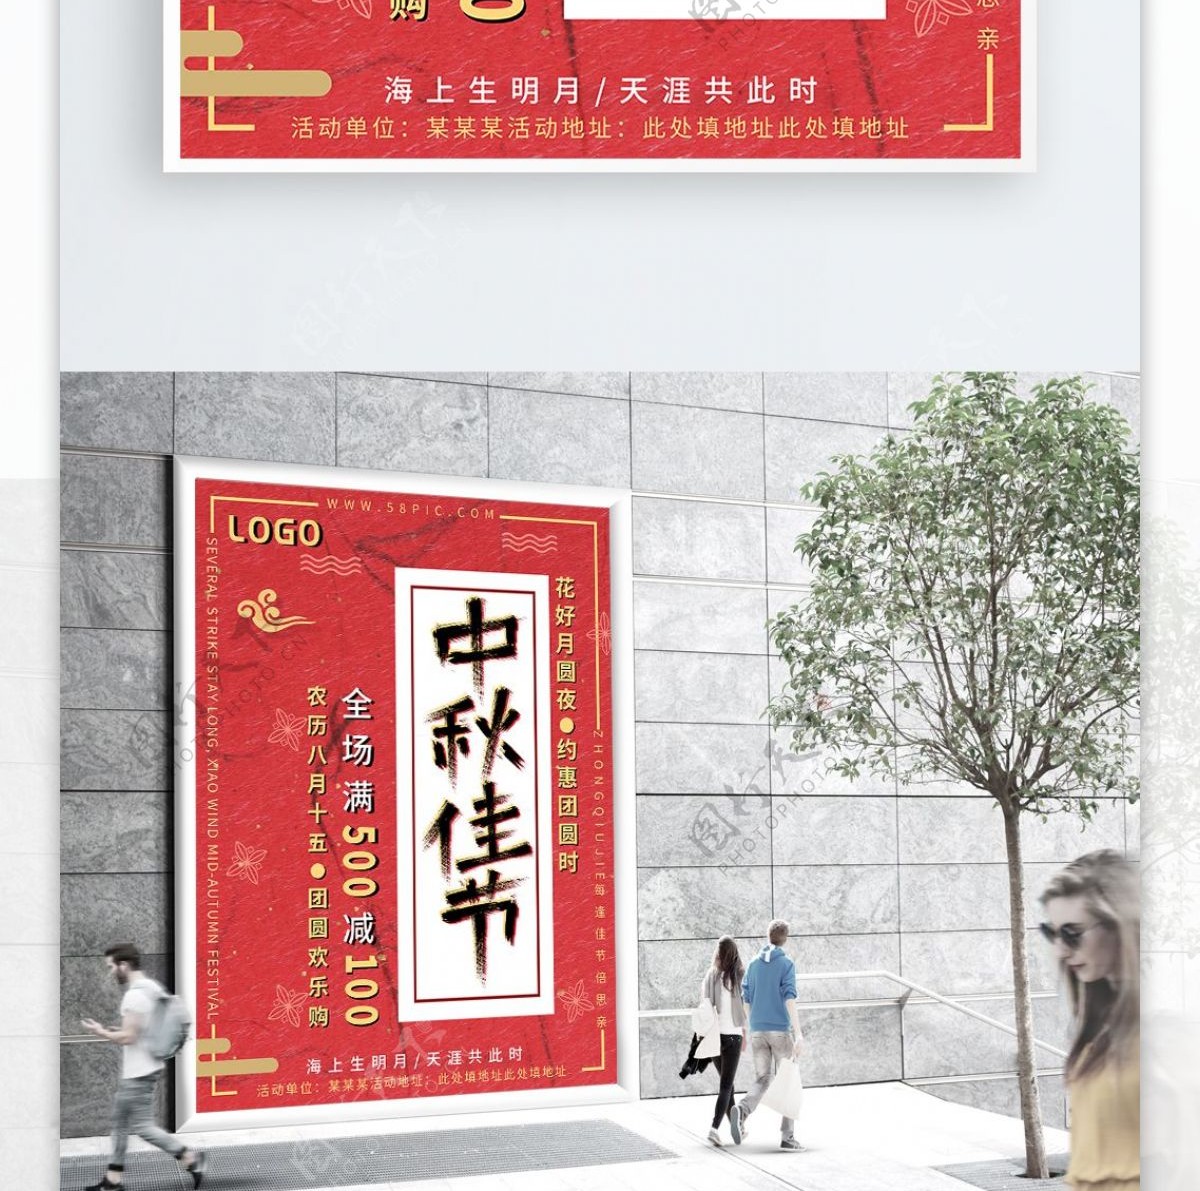 红色中国风大气简约中秋节促销海报